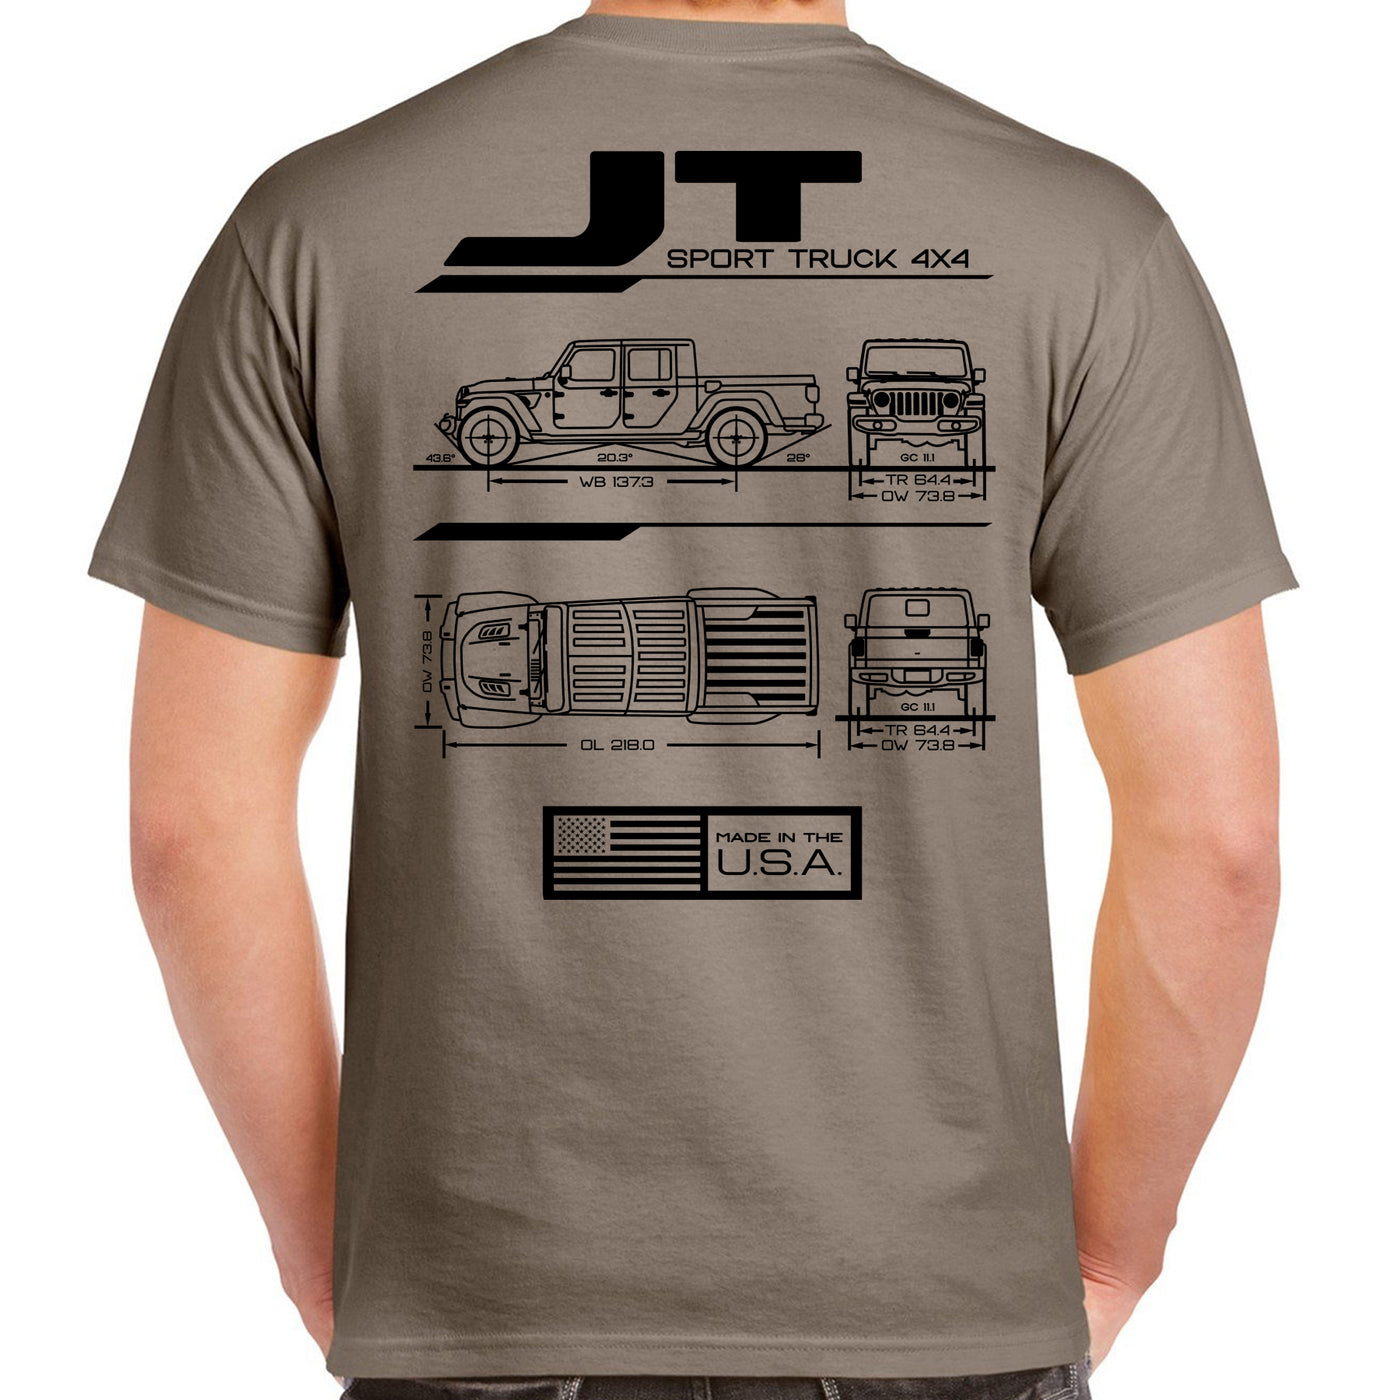 JT Blueprint T-Shirt